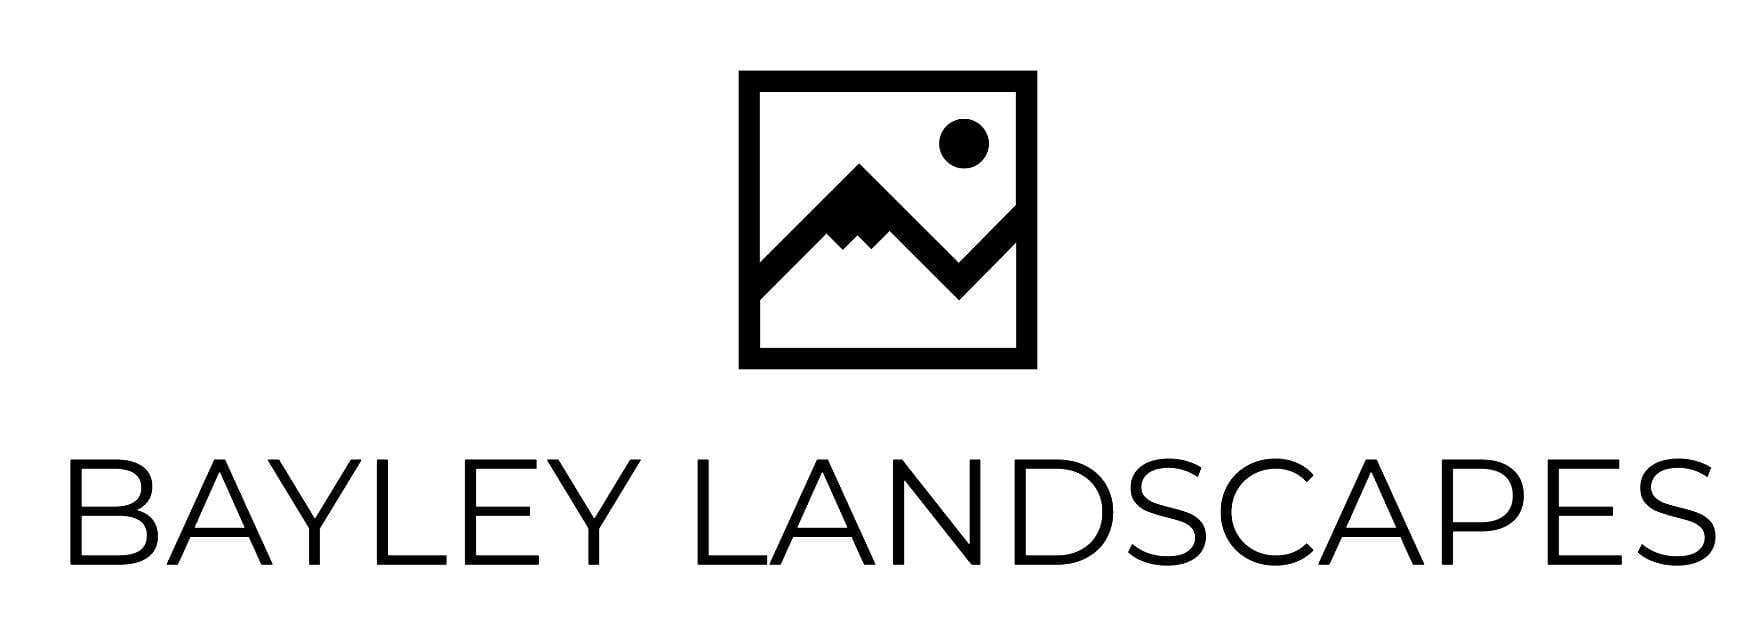 BAYLEY-LANDSCAPES-logo-new-2020-2-1